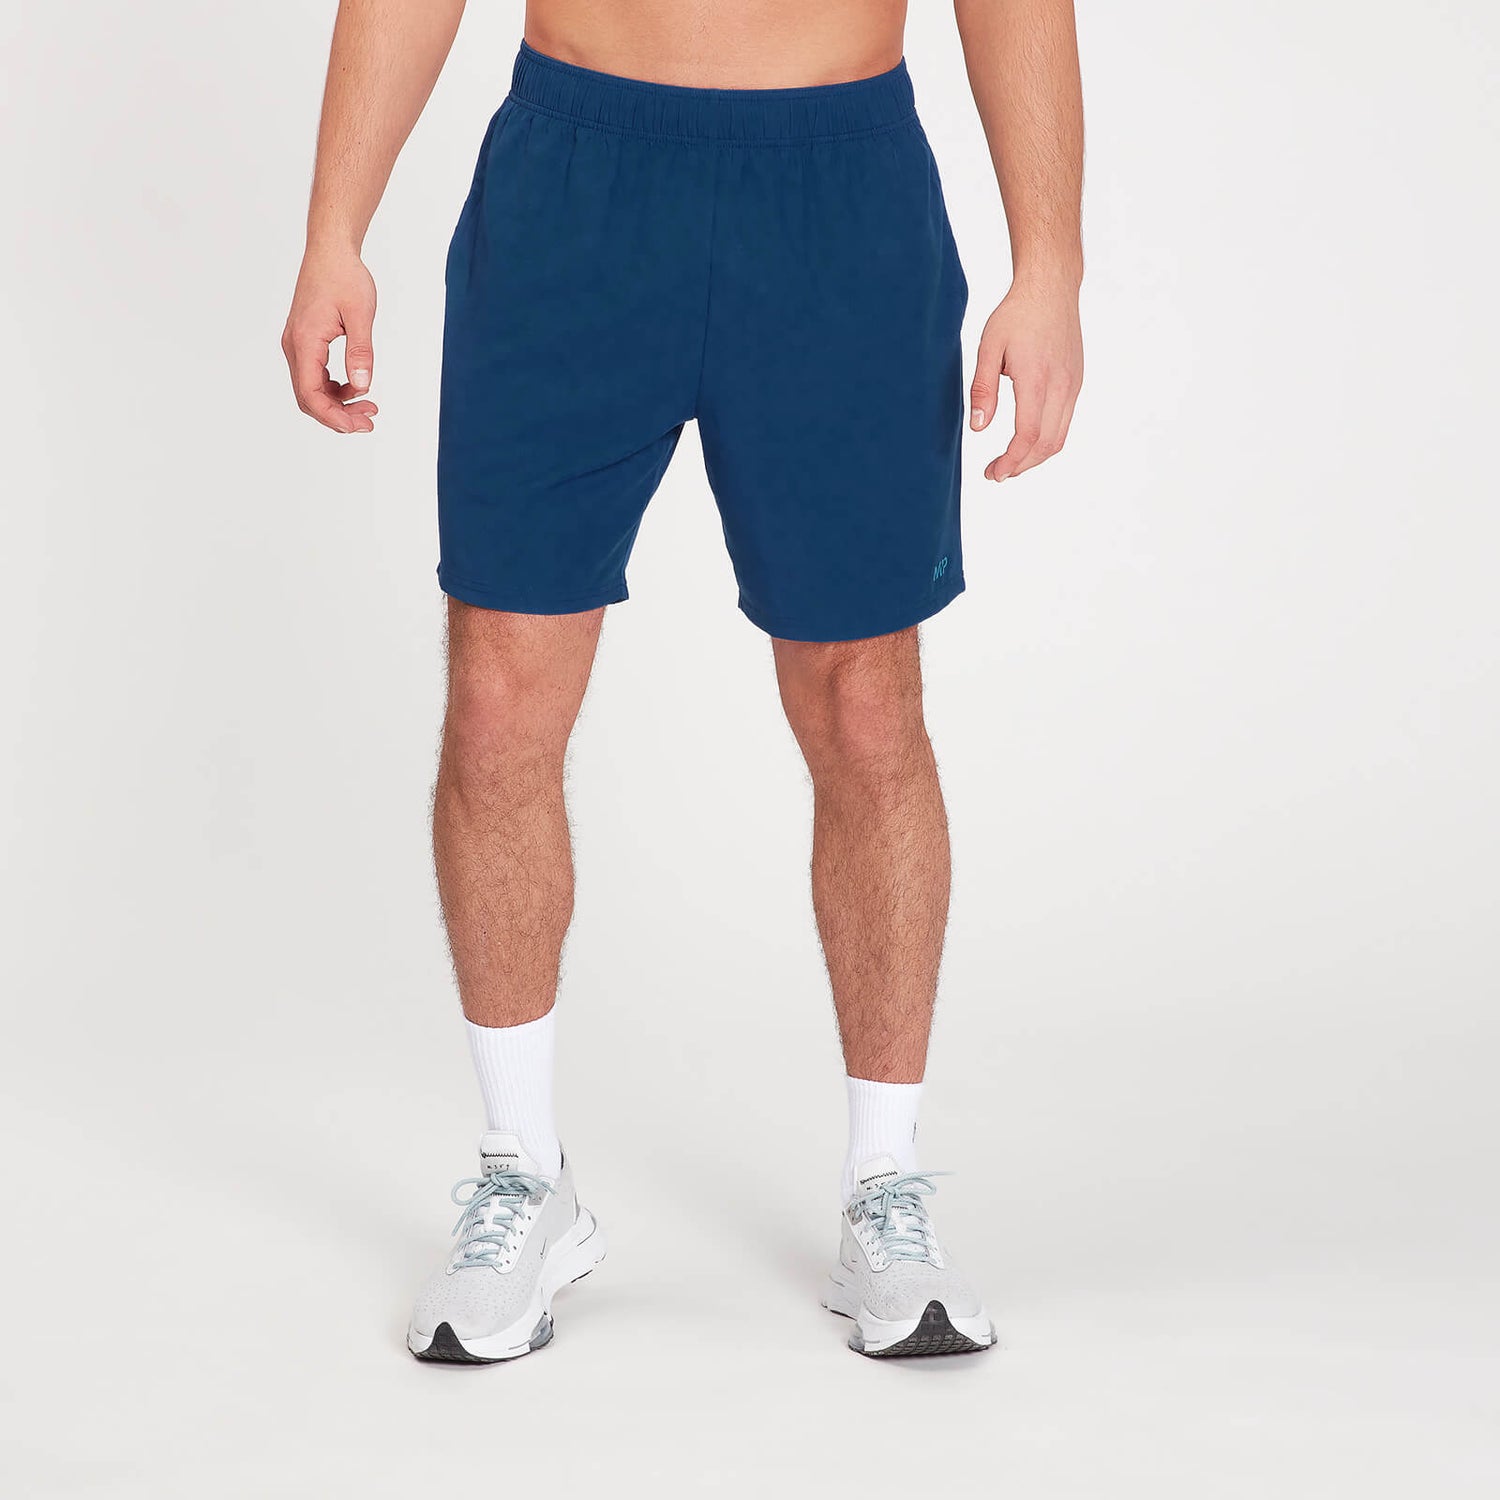 Pantaloncini sportivi con stampa effetto sfumato MP da uomo - Blu scuro